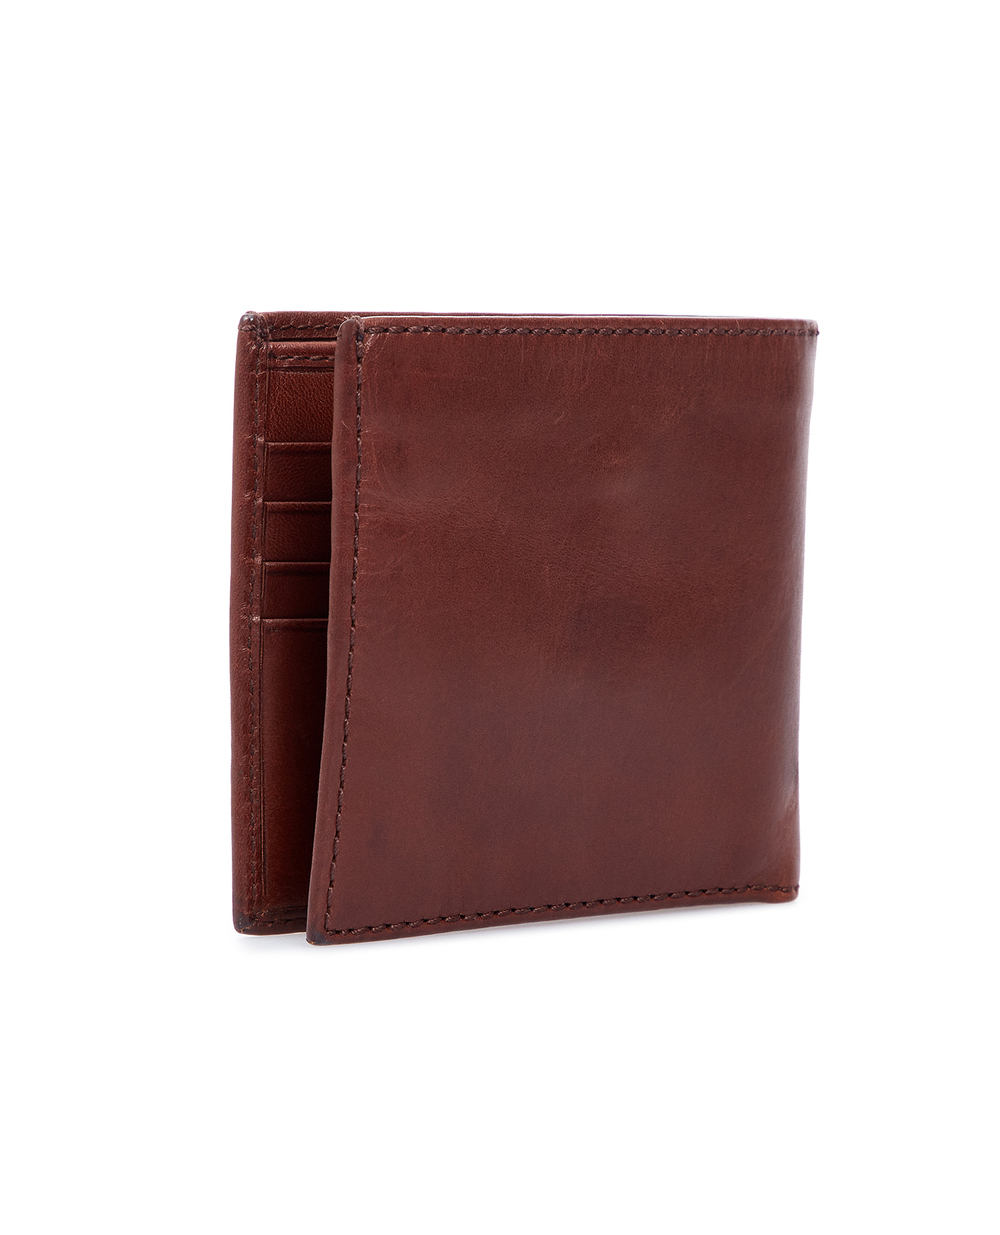 Кожаный кошелек Polo Ralph Lauren 405727788001, коричневый цвет • Купить в интернет-магазине Kameron